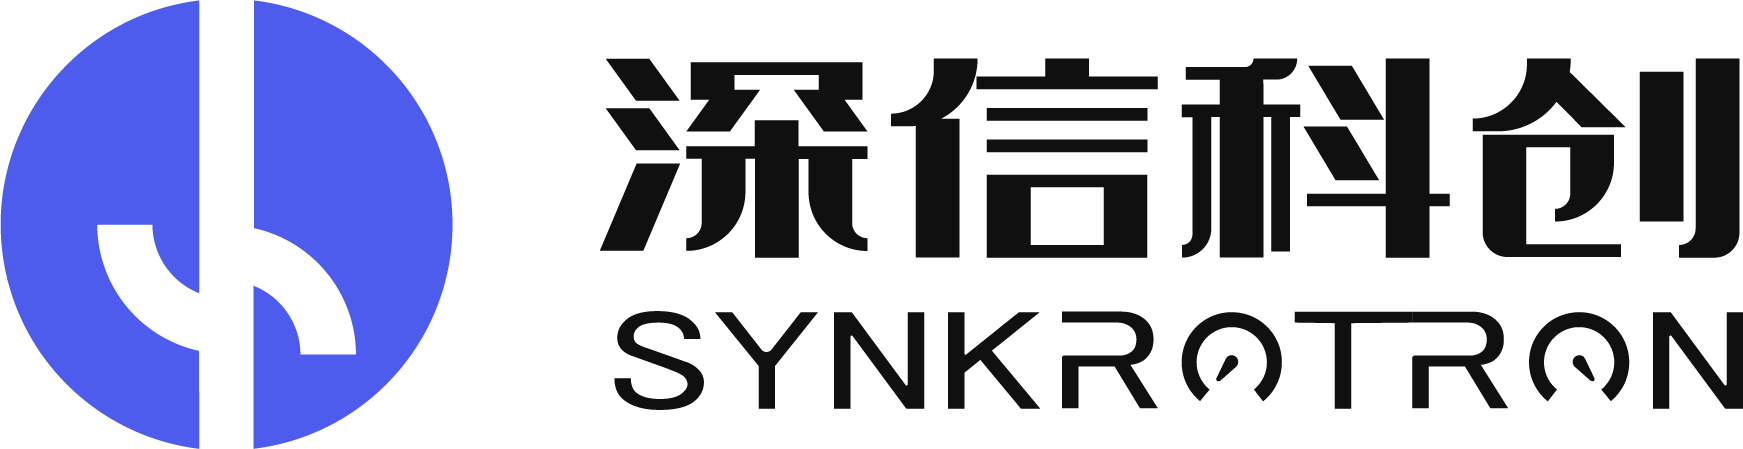 synkrotron logo